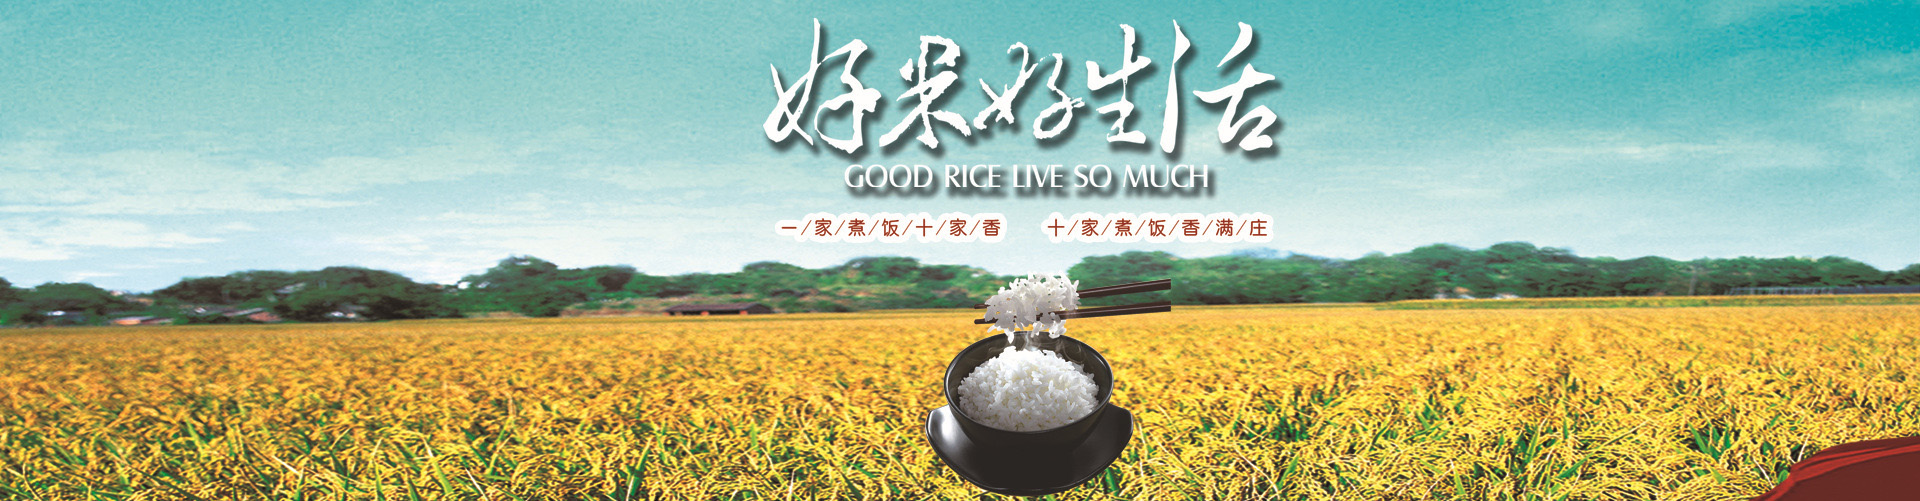 五常稻花香大米专卖店 精选优质五常稻花香大米